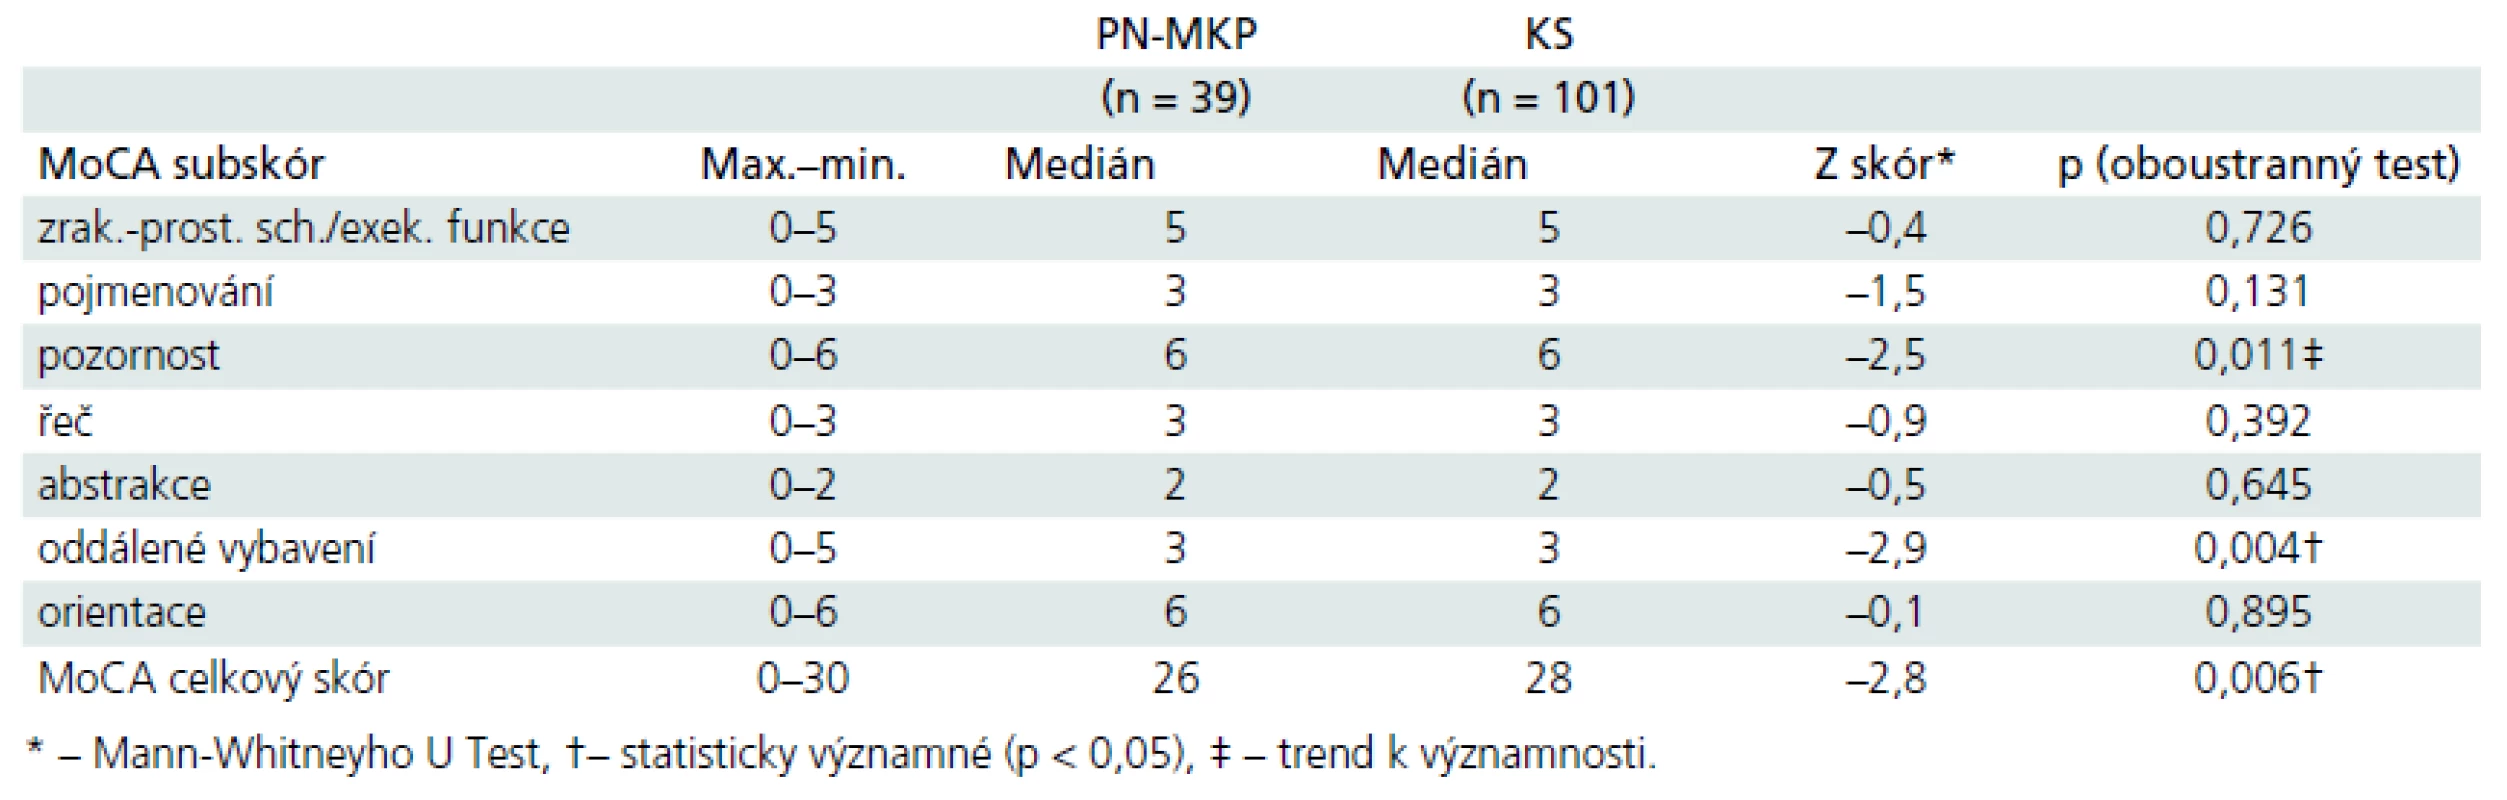 Rozdíly mezi skupinami dle jednotlivých subskórů MoCA u PN-MKP vs kontrolní osoby.